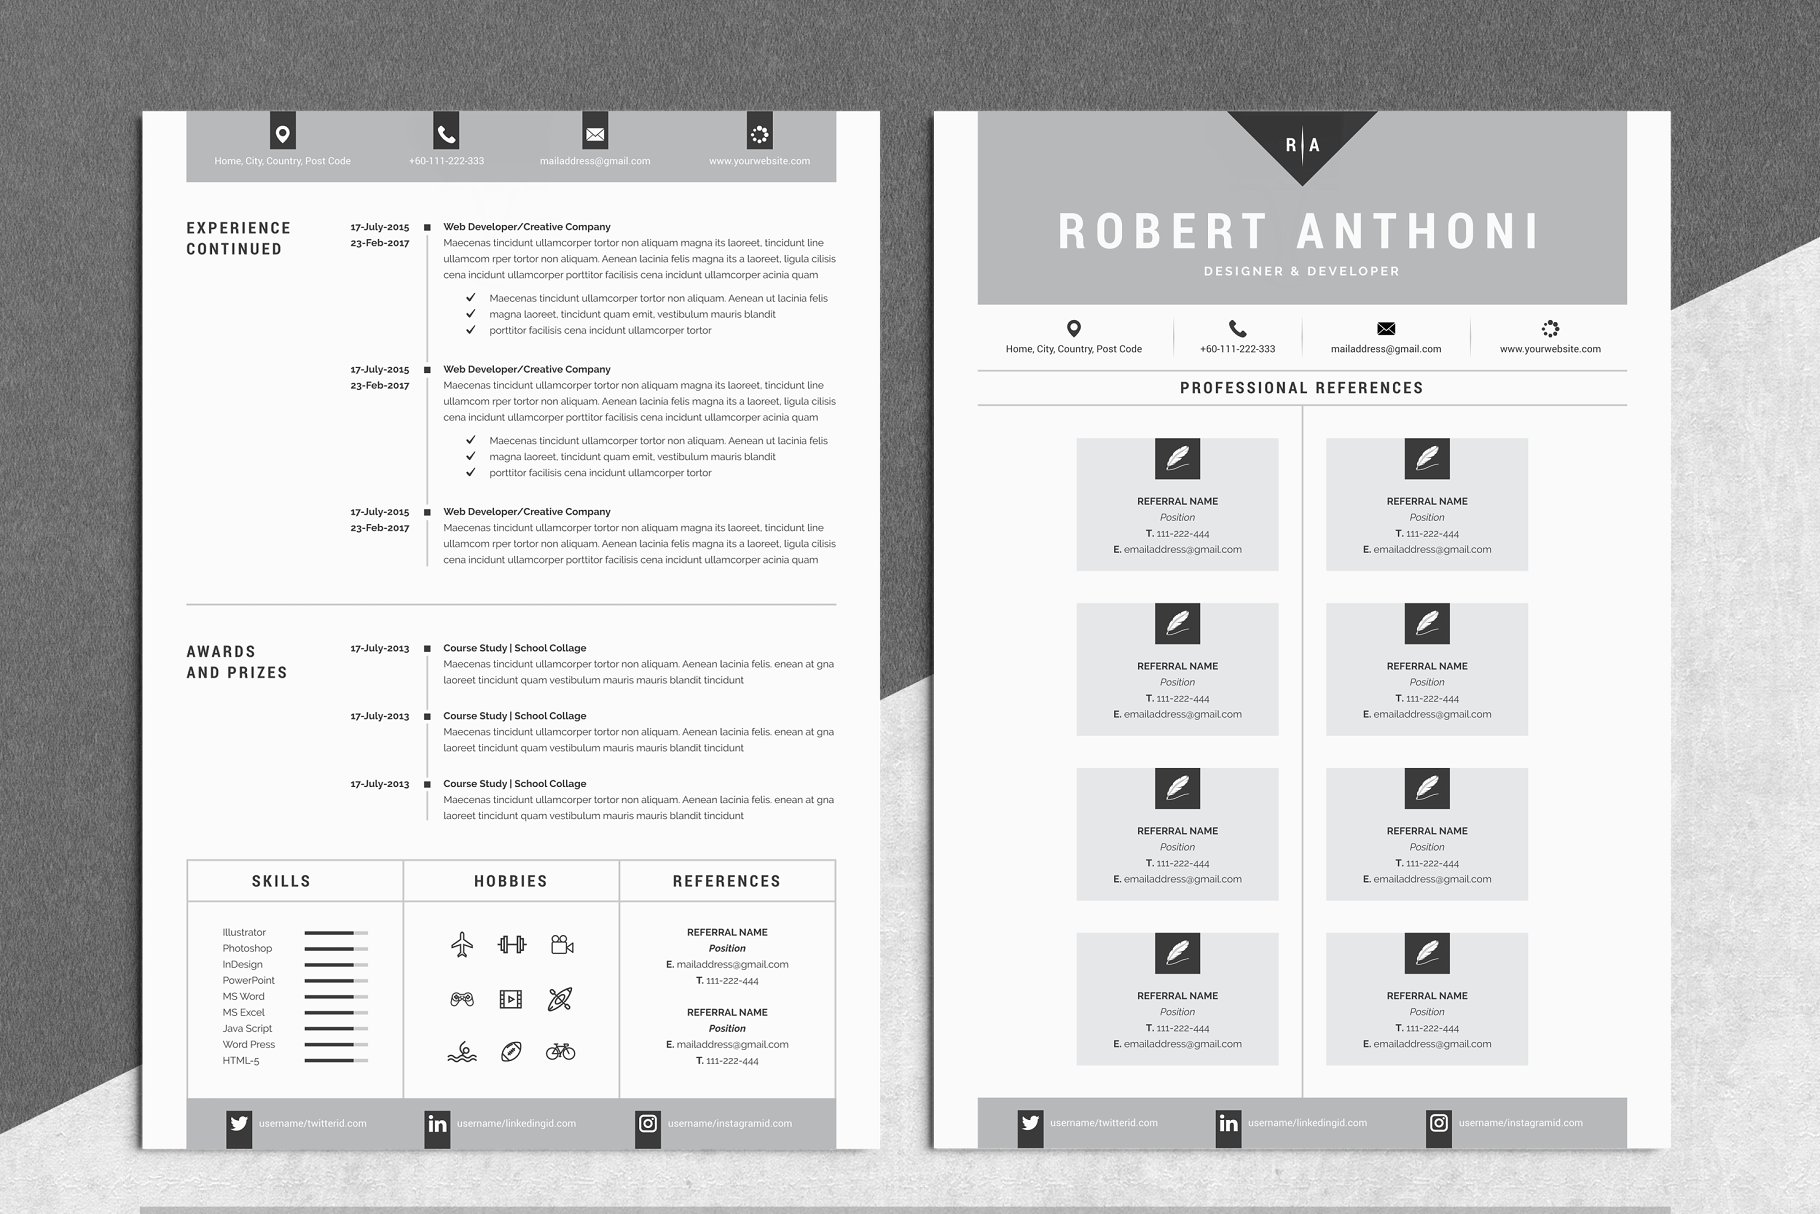 极简主义创意电子简历模板 4 Pages Creative Resume Pack插图(2)